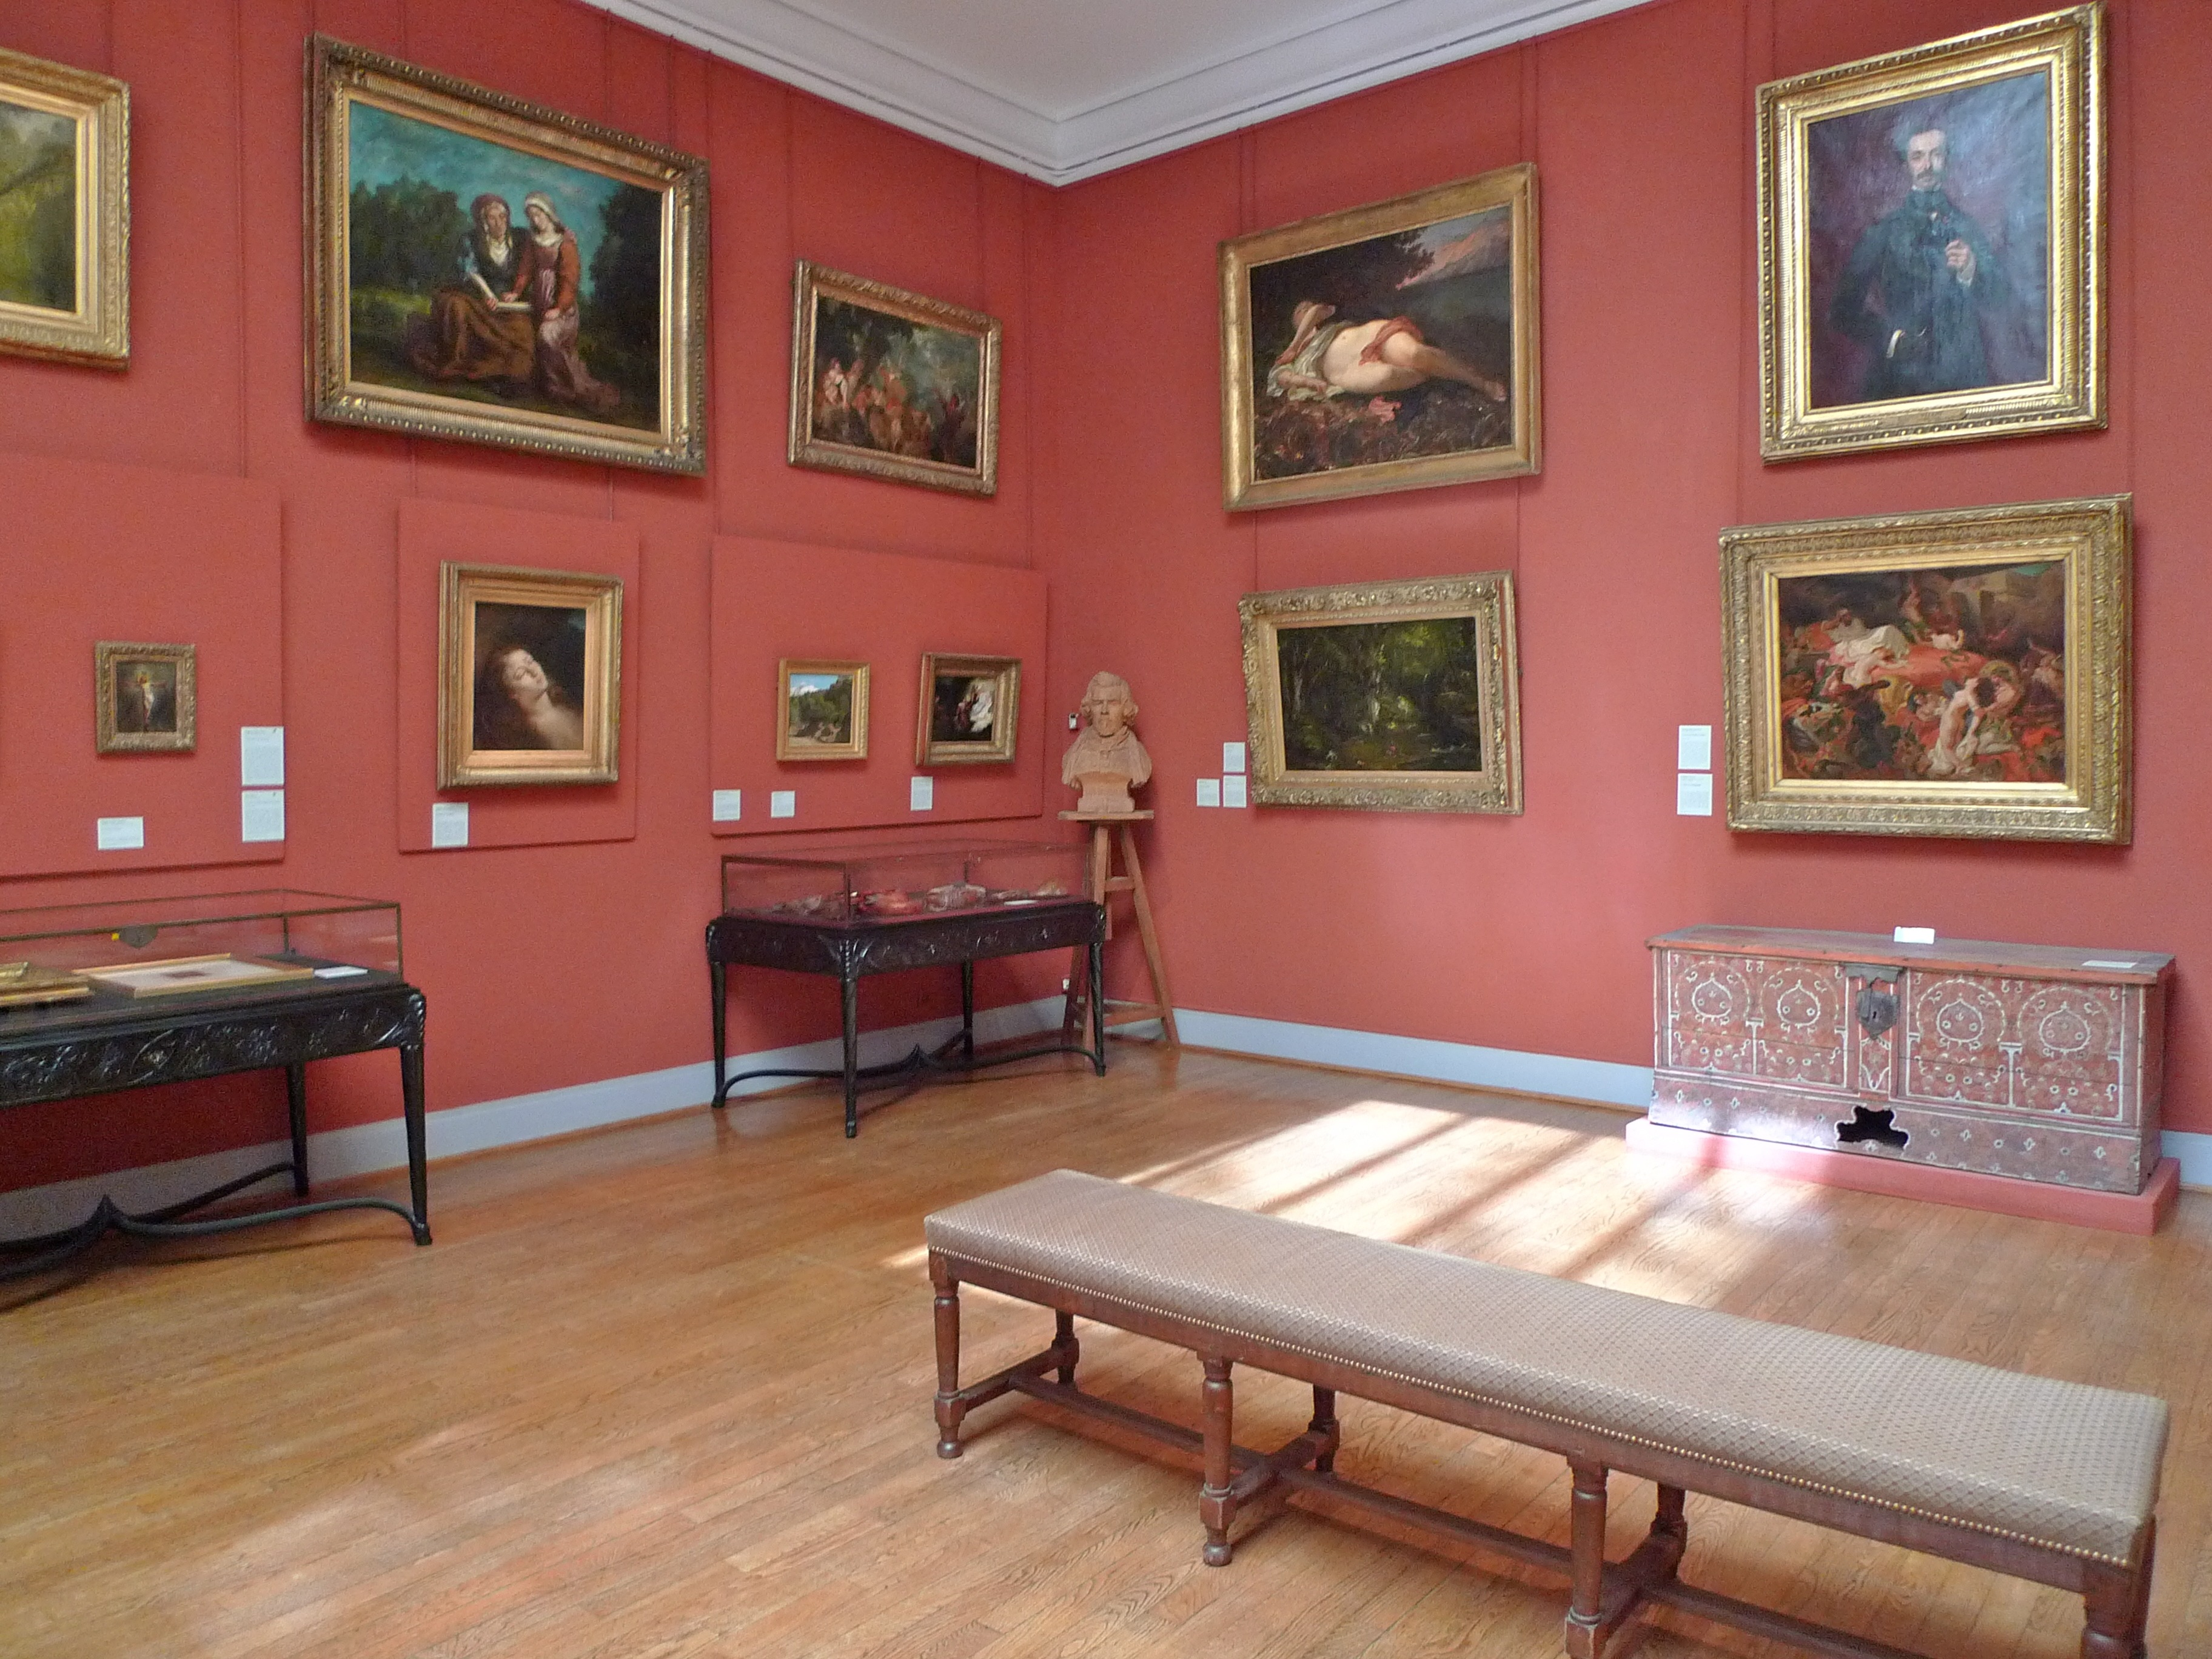 The Musée Eugène Delacroix